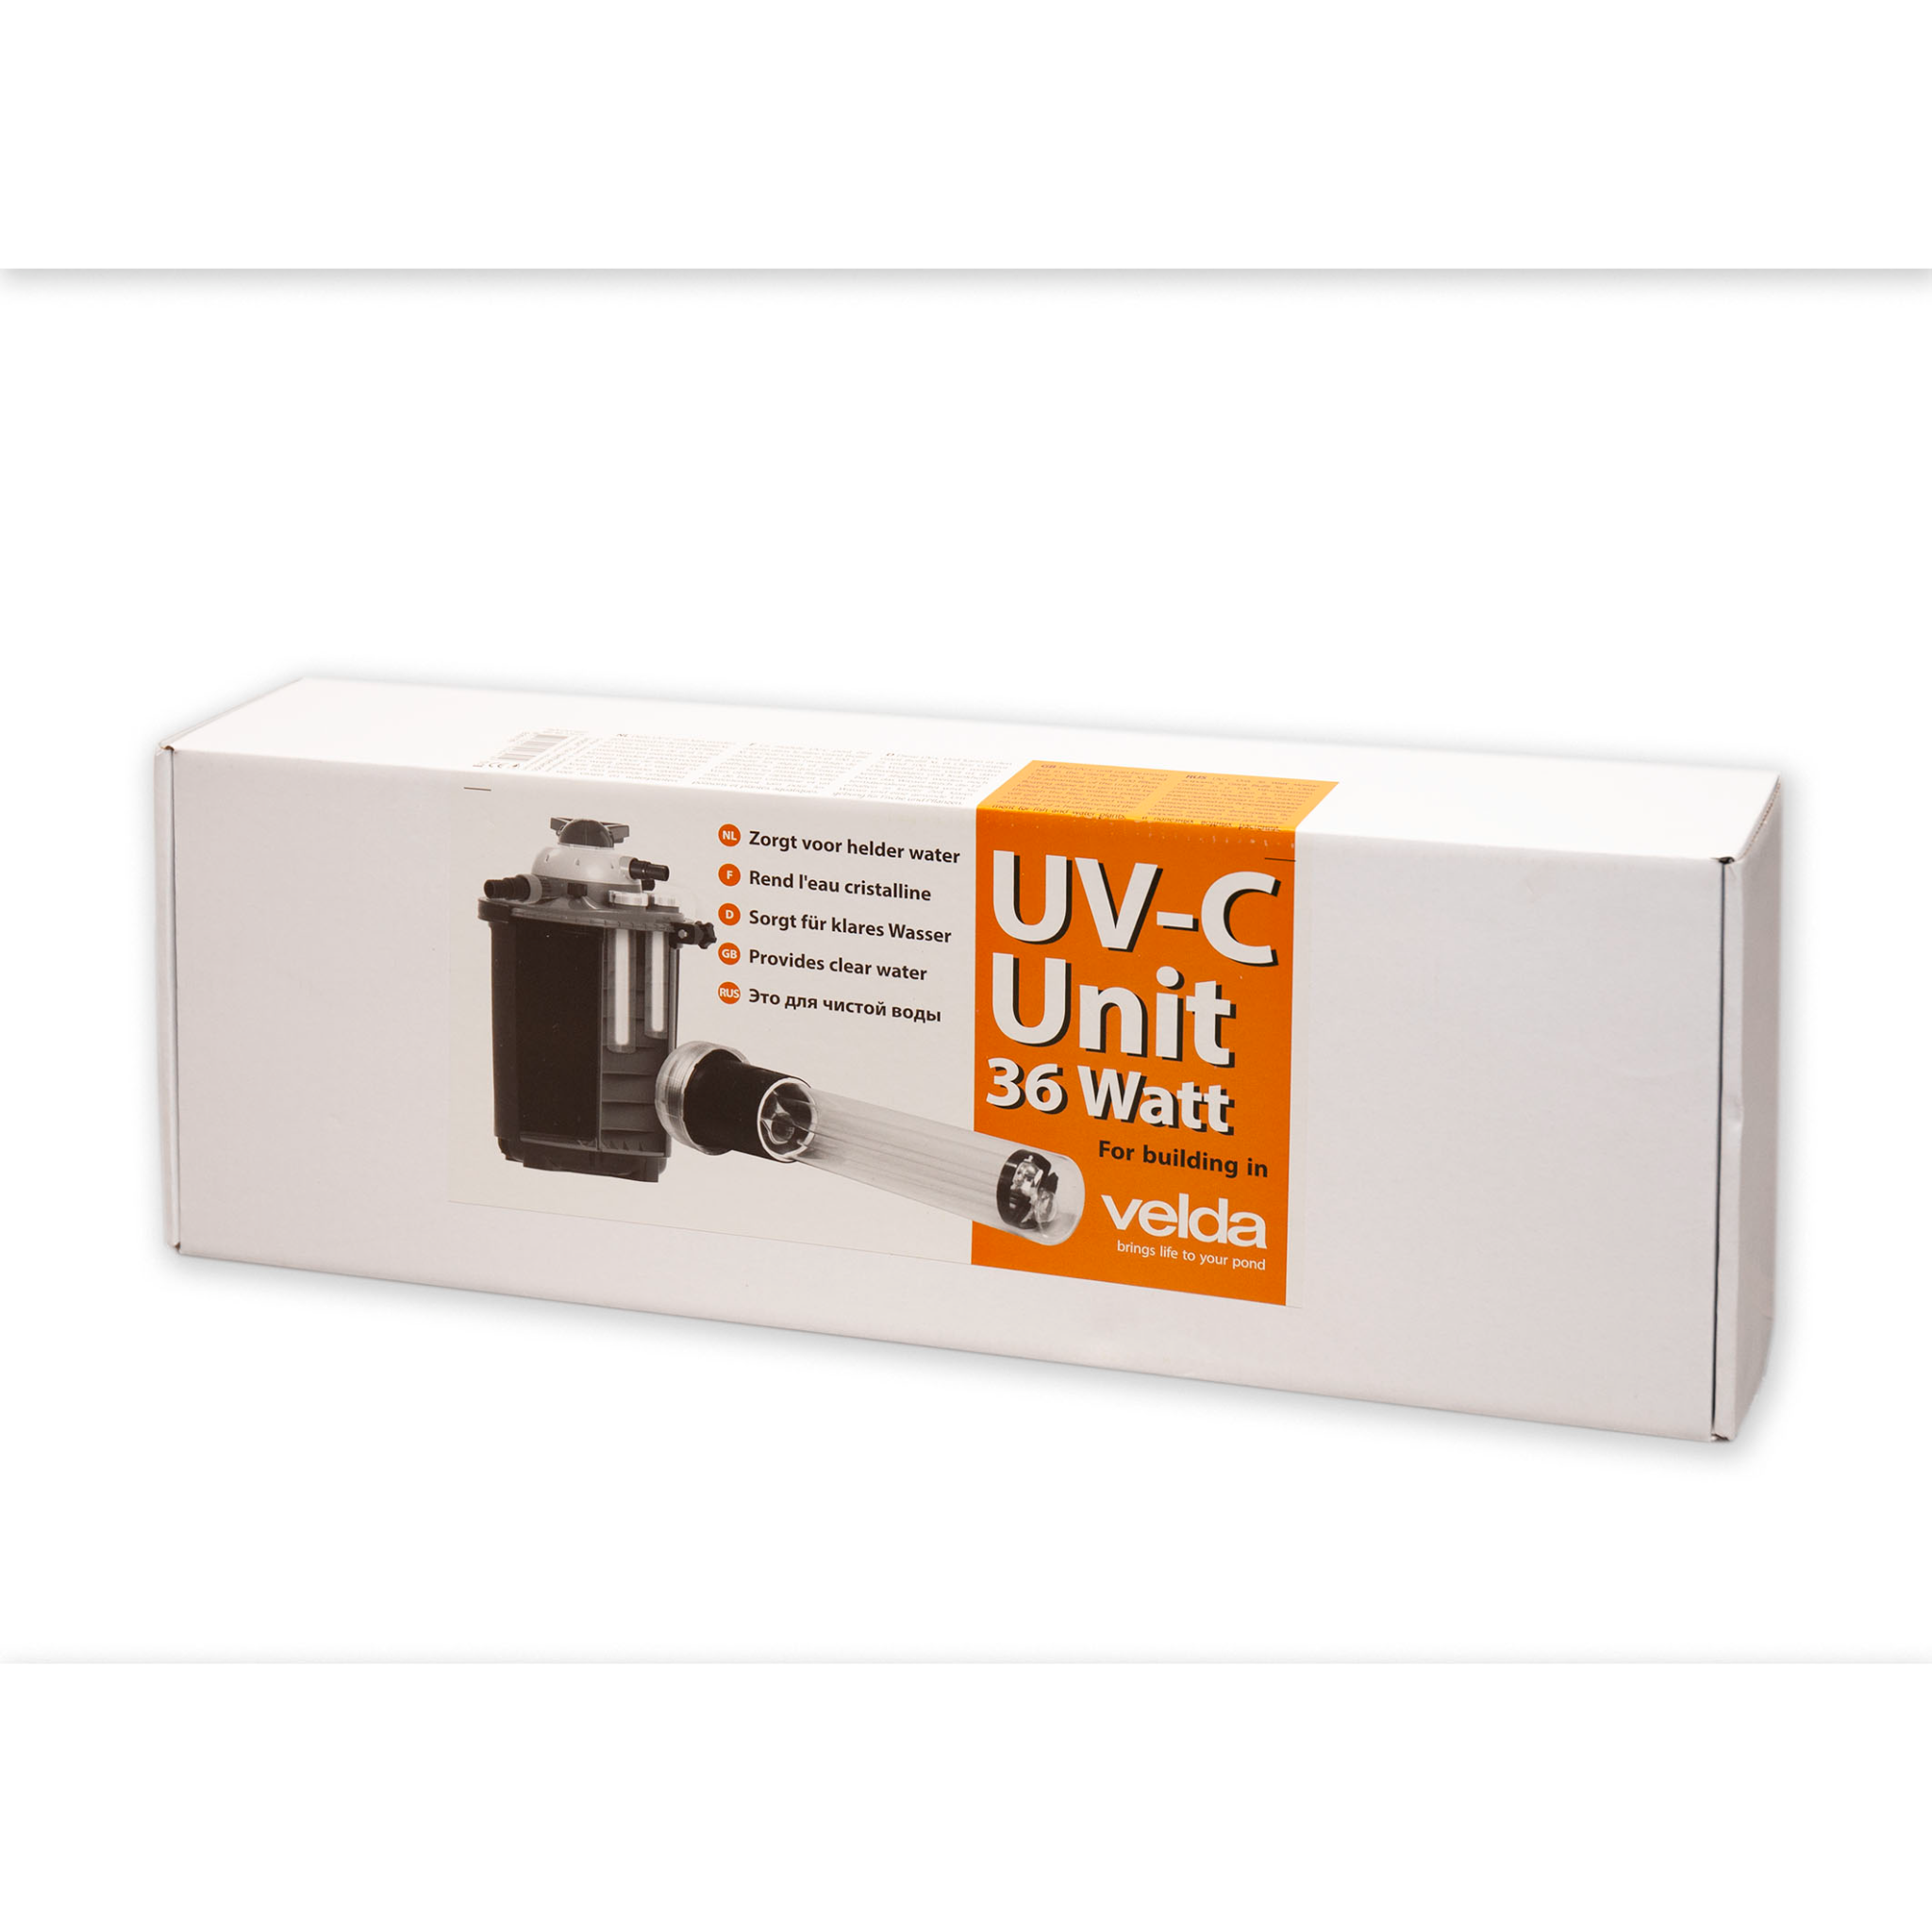 UV-C Einbau Unit